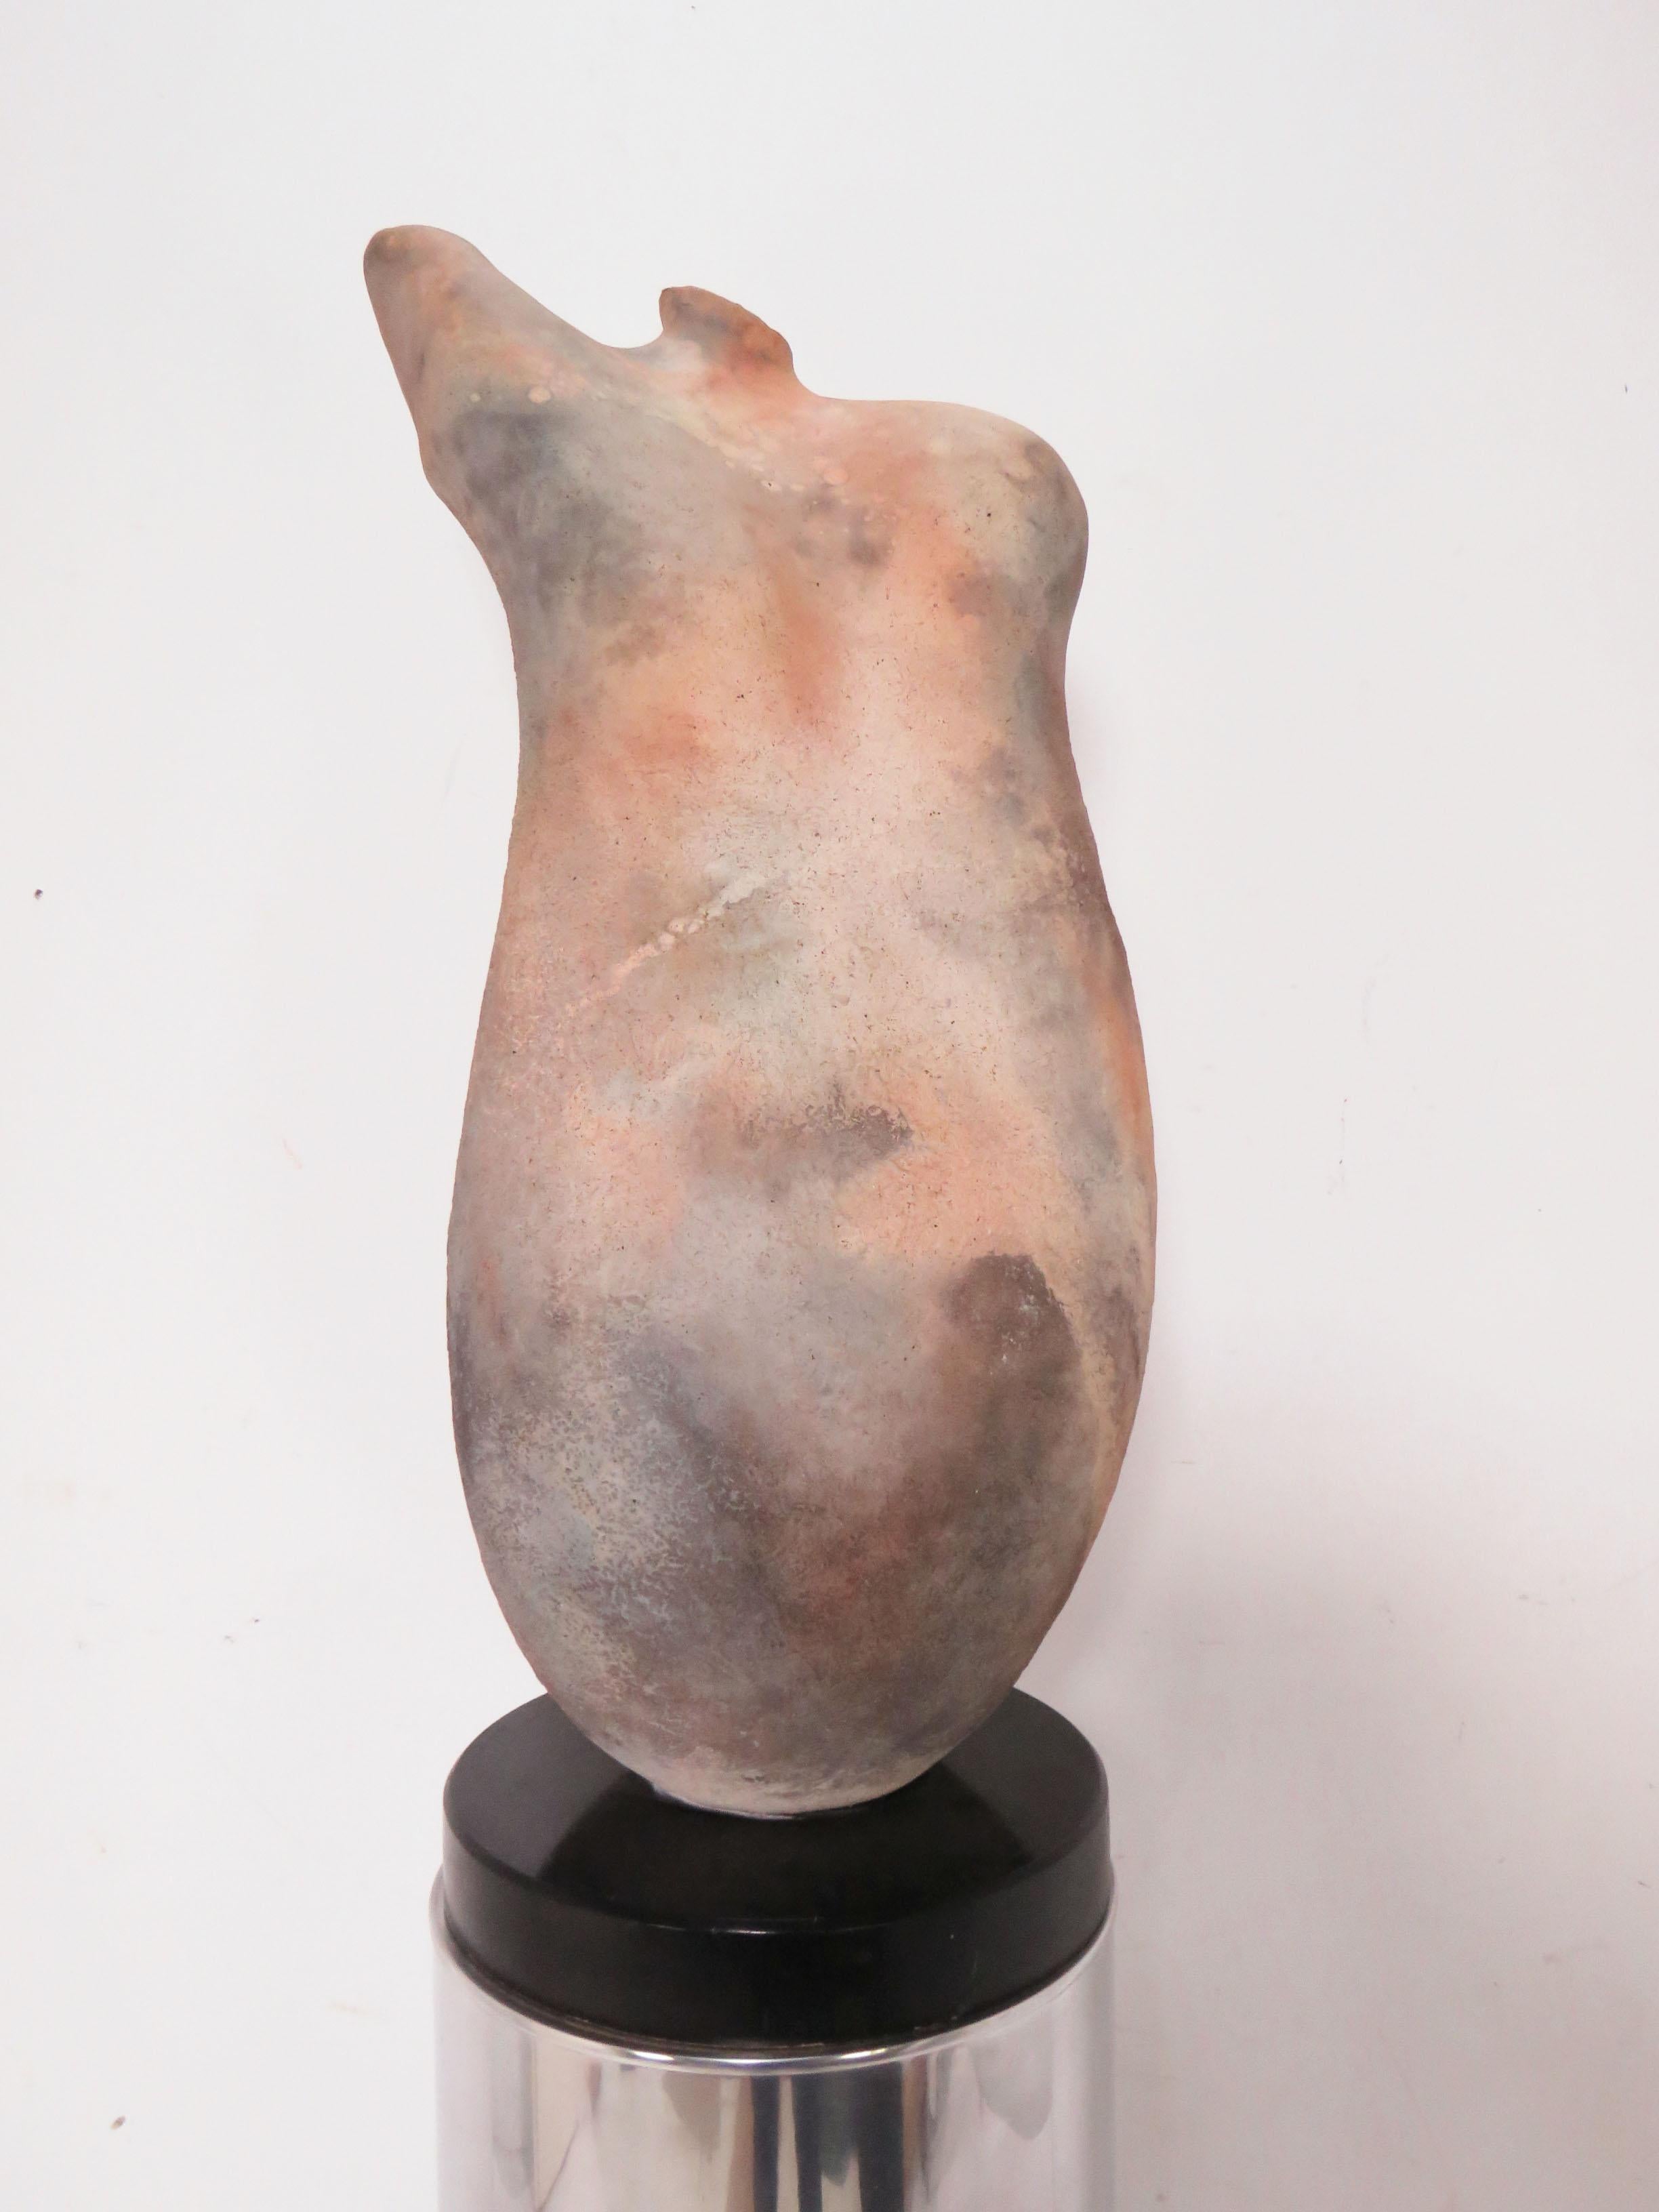 Sculpture abstraite de torse en raku du maître potier Tom Neugebauer, datée de 1988. La sculpture (qui est fixée à une base noire laquée) mesure : 28.75